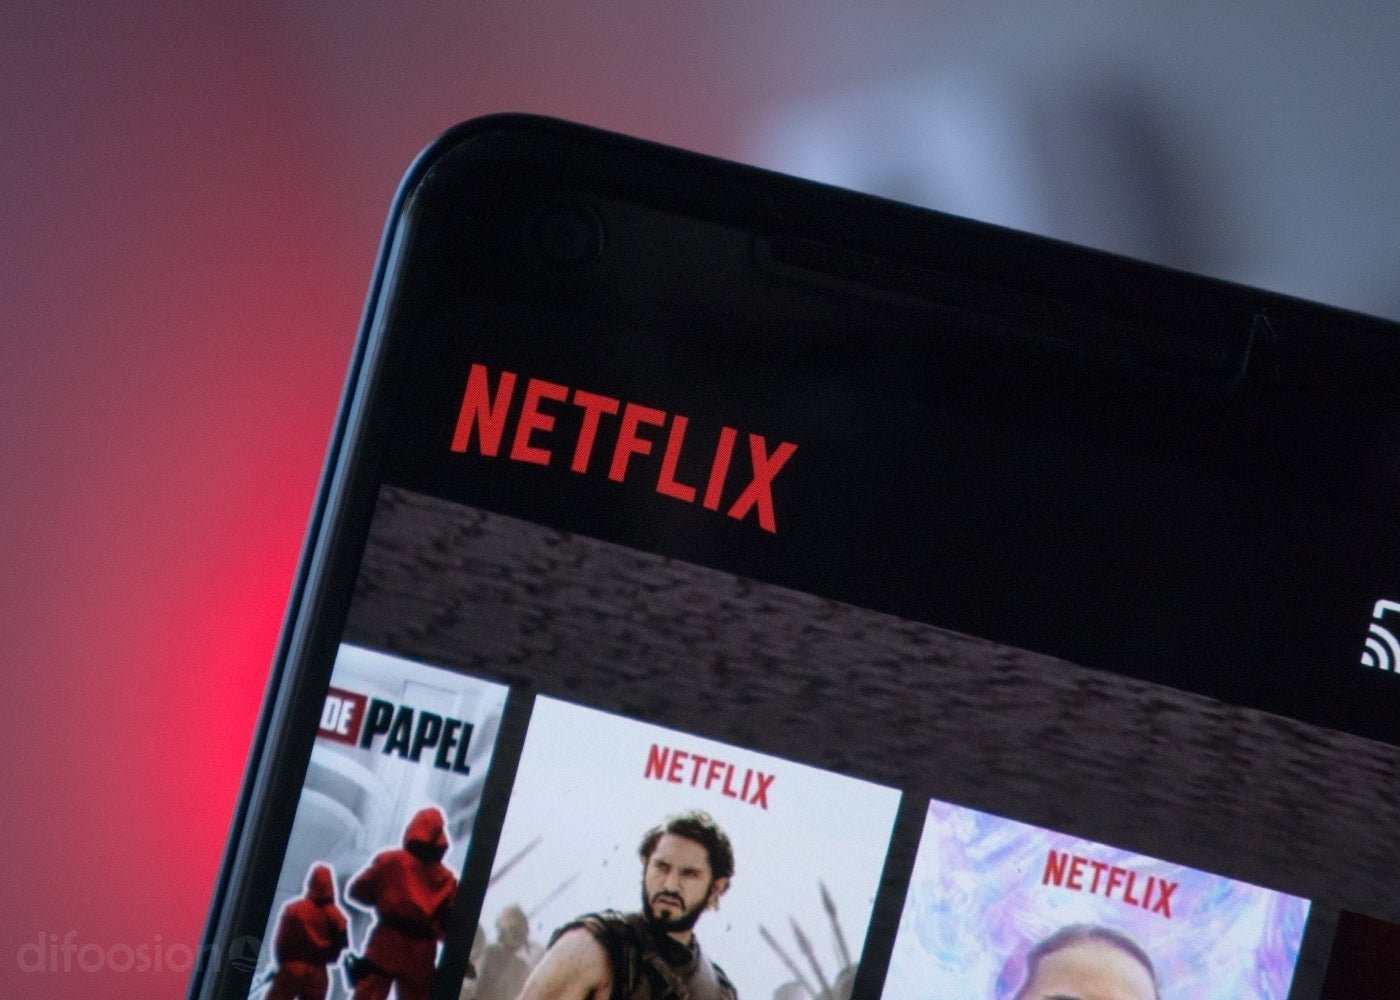 Adiós al mes de prueba gratis de Netflix en España: a partir de ahora pagarás desde el primer día